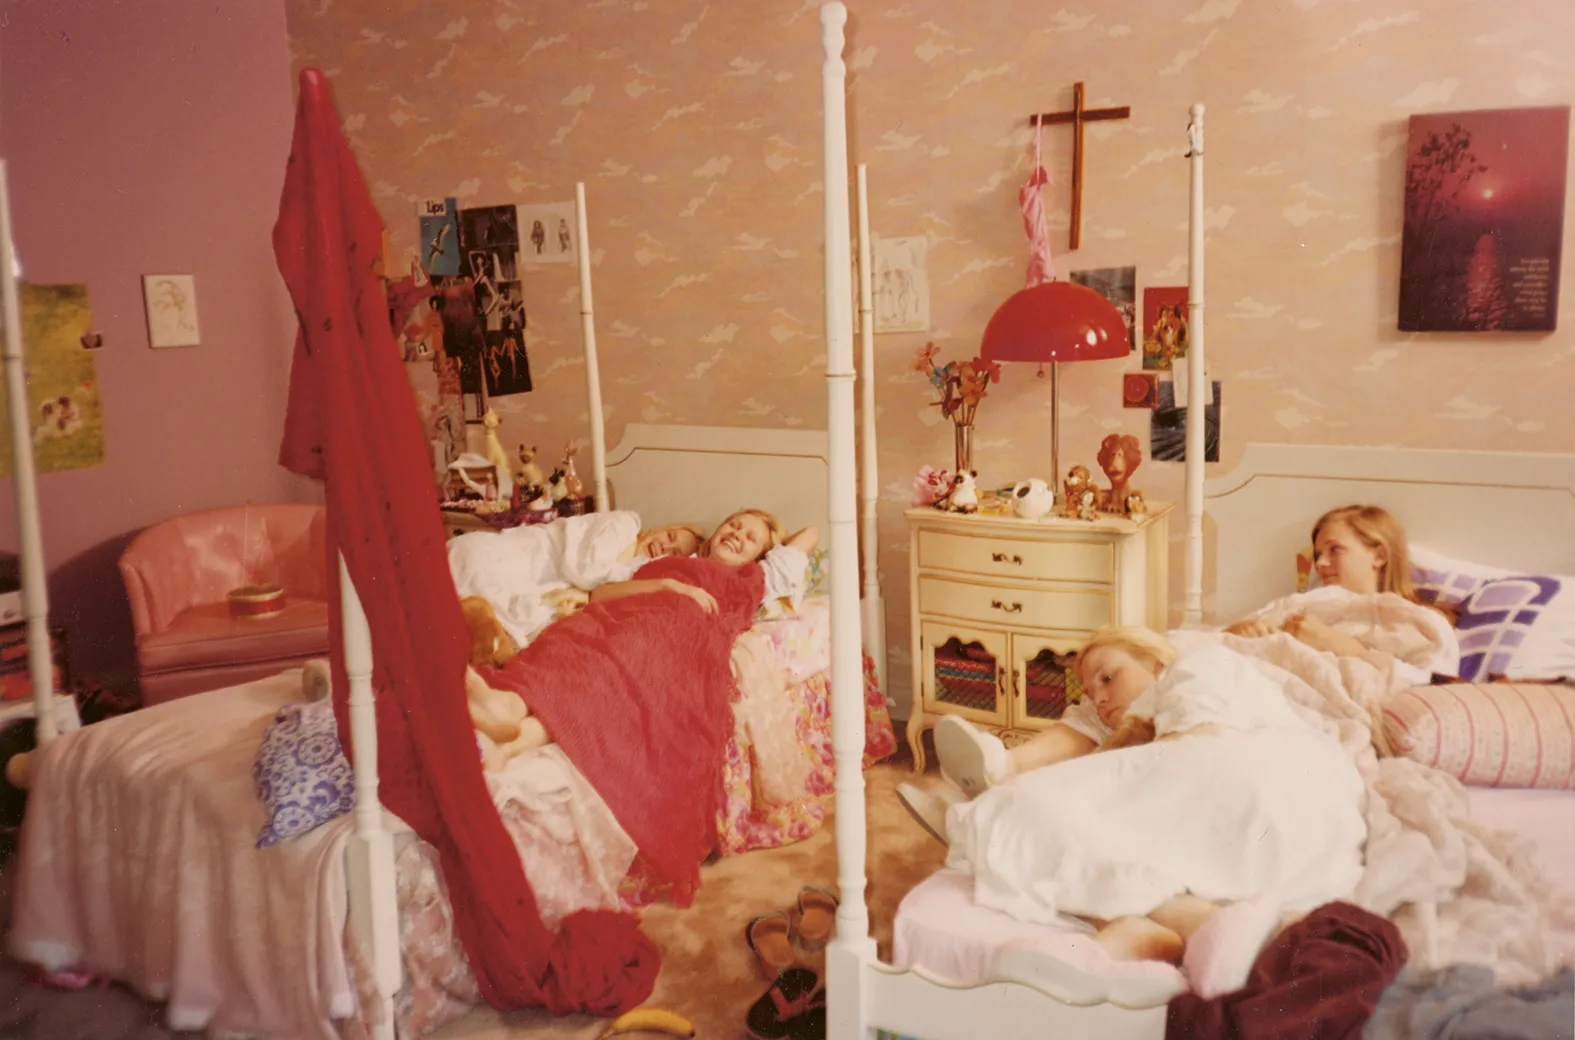 Coppola filmowała aktorów wcielających się w siostry Lisbon w filmie „Przekleństwa niewinności” (1999 r.) leżących godzinami w łóżku: – Przy naszym niewielkim budżecie kończyły nam się taśmy filmowe, ale kręciliśmy dalej, więc dziewczyny naprawdę wyglądały, jakby były w tym domu od zawsze. (Fot. Sofia Coppola)